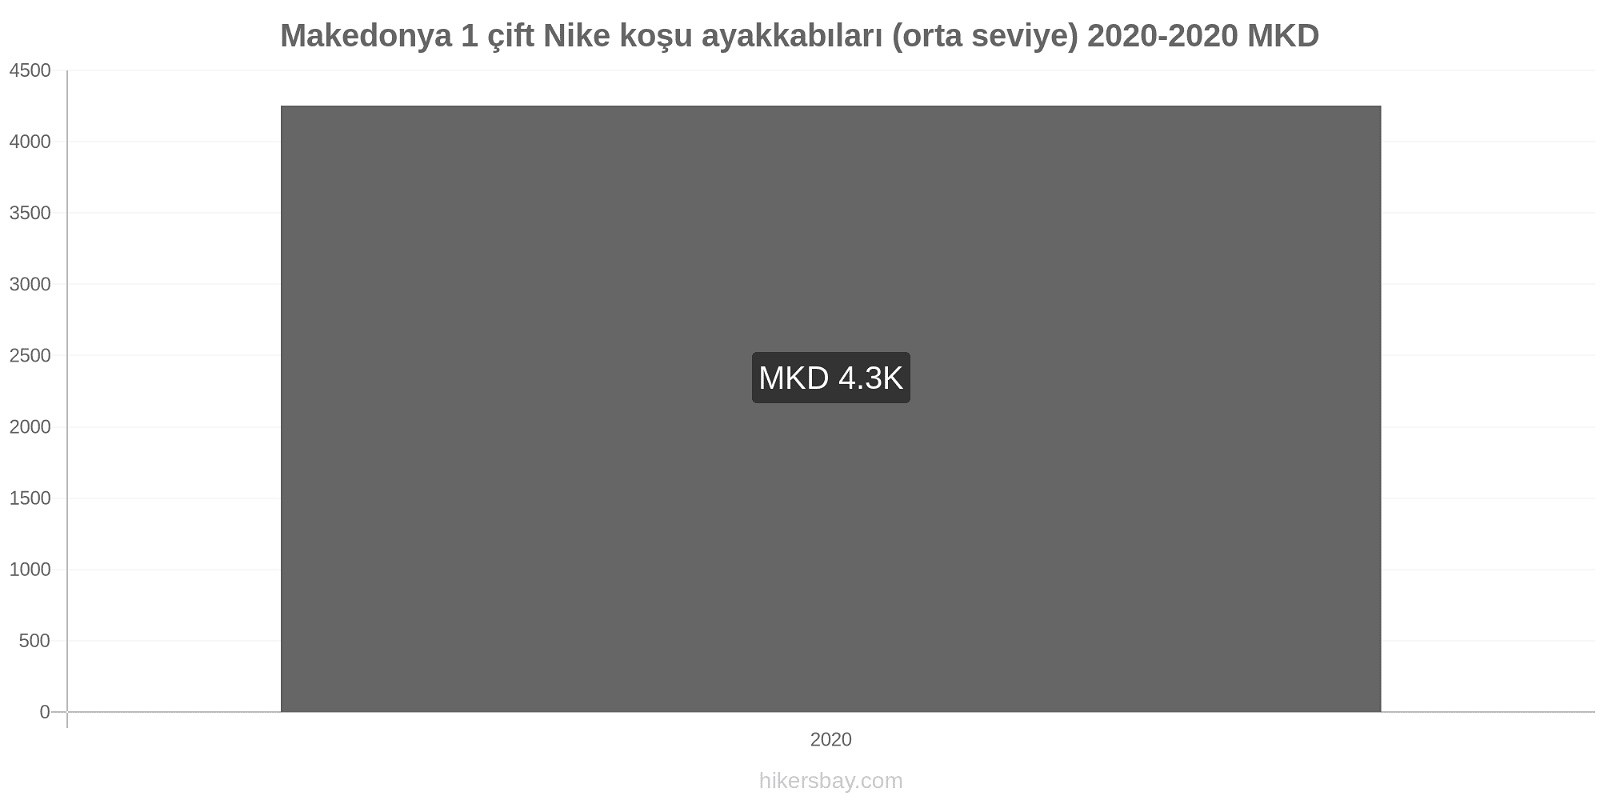 Makedonya fiyat değişiklikleri 1 çift Nike koşu ayakkabıları (orta seviye) hikersbay.com